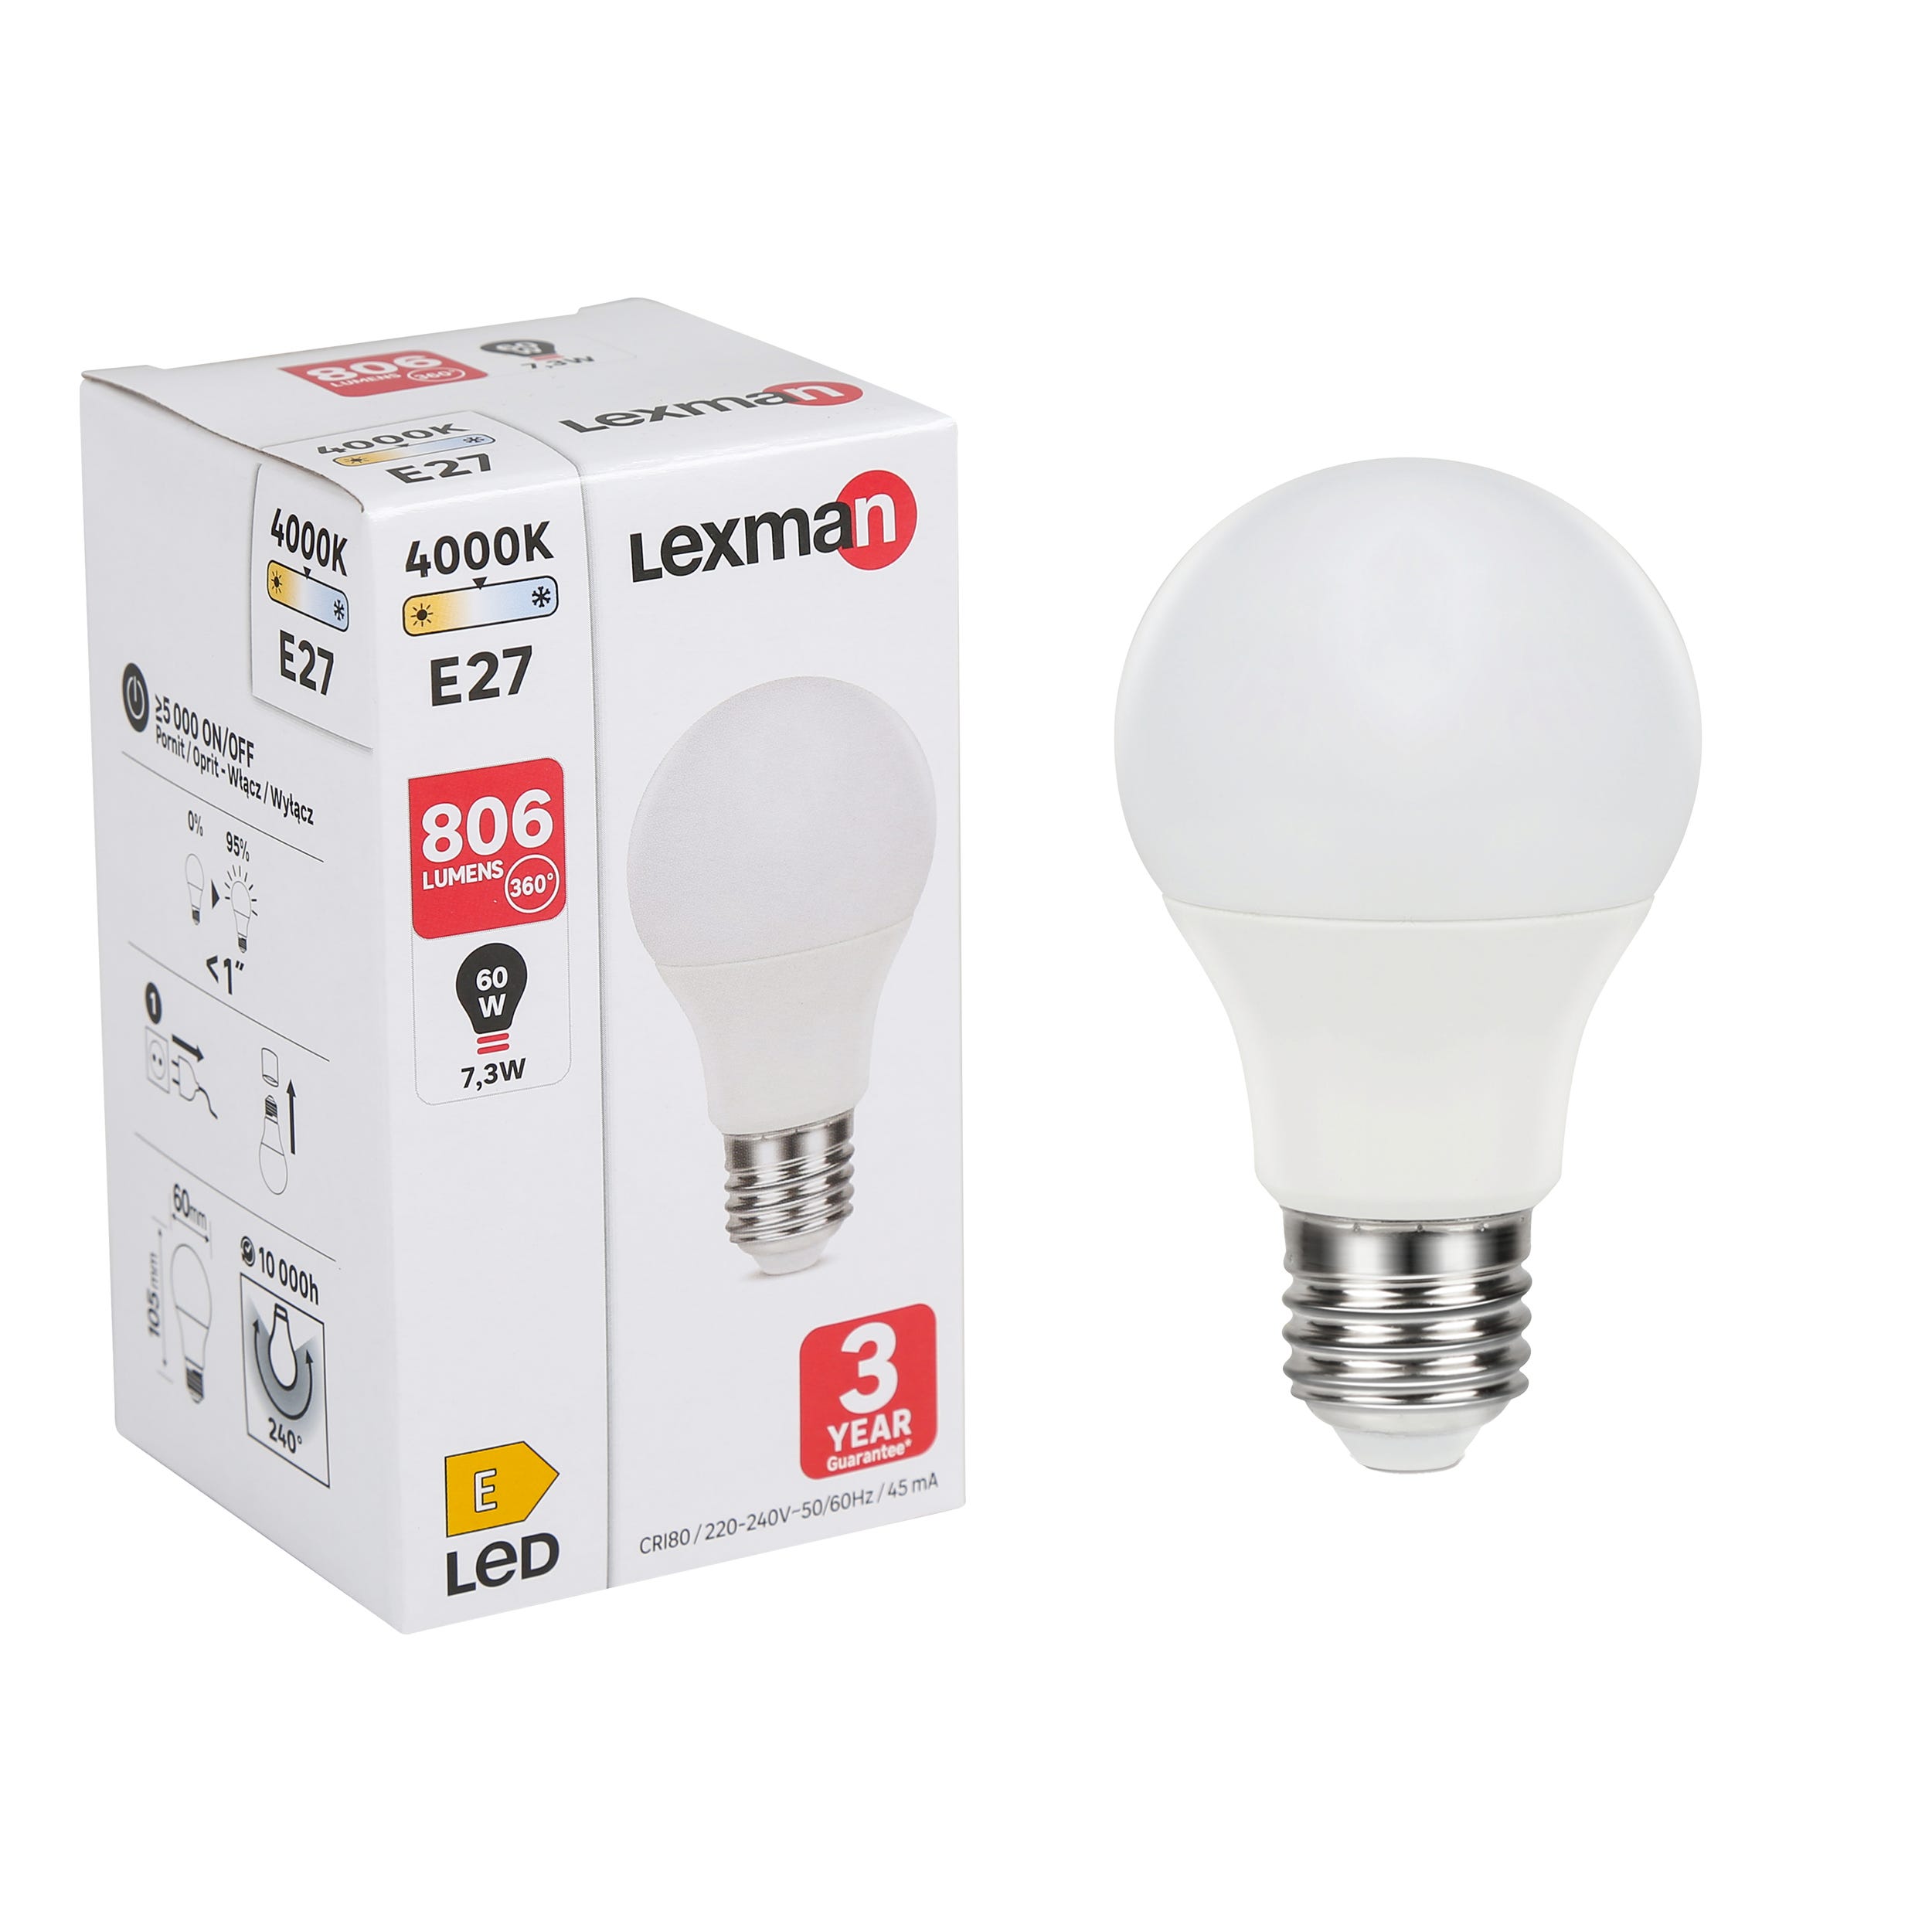 LnD I Ampoule led E27 806lm, 60W, Blanc neutre